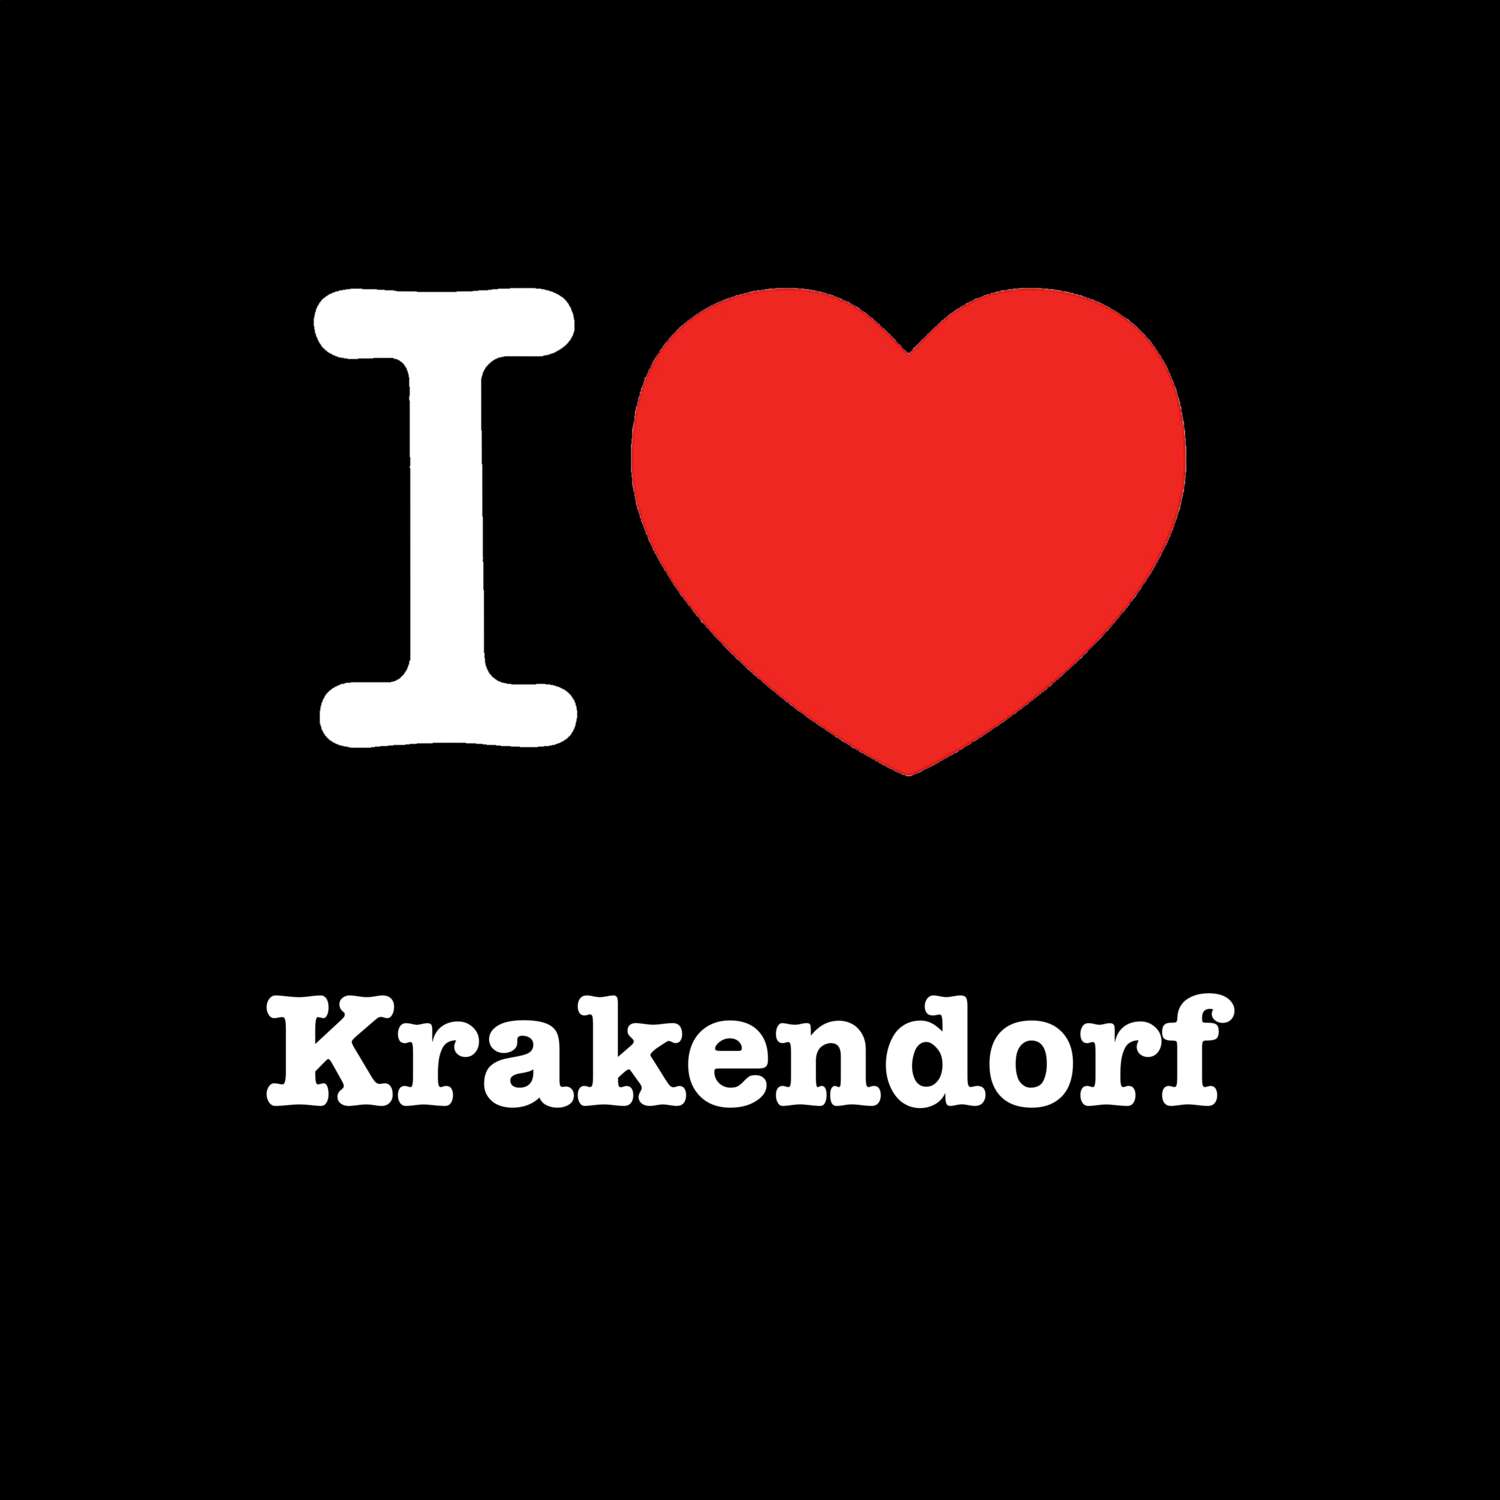 Krakendorf T-Shirt »I love«